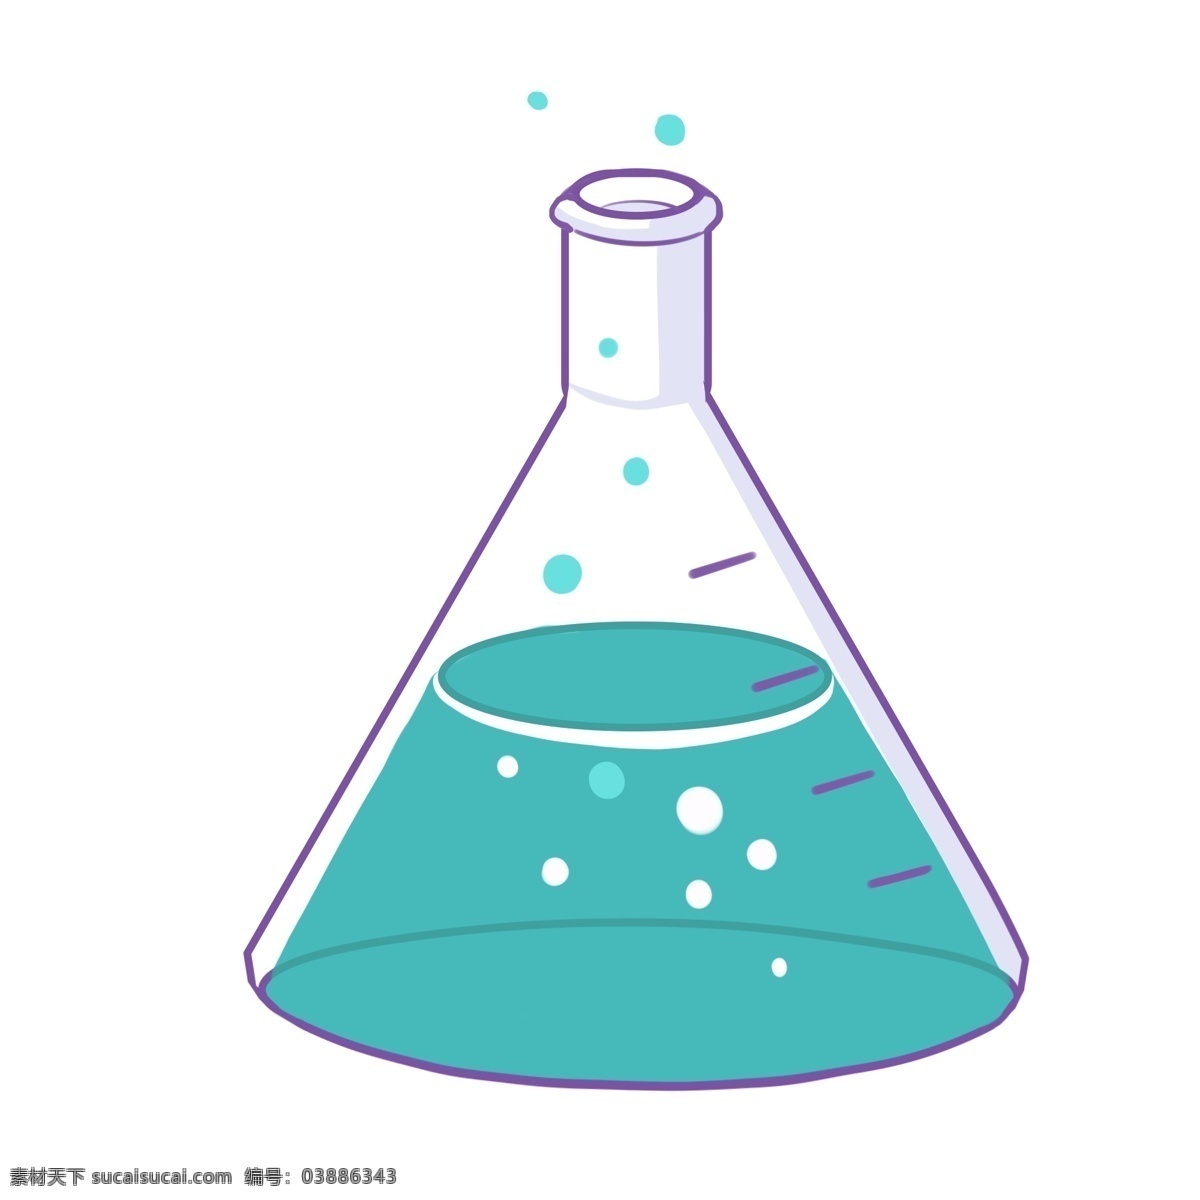 紫色 瓶子 图案 插图 紫色液体 化学教学量筒 仪器图案 化学仪器 化学器材 化学课堂 教学仪器 漏斗 白色气泡